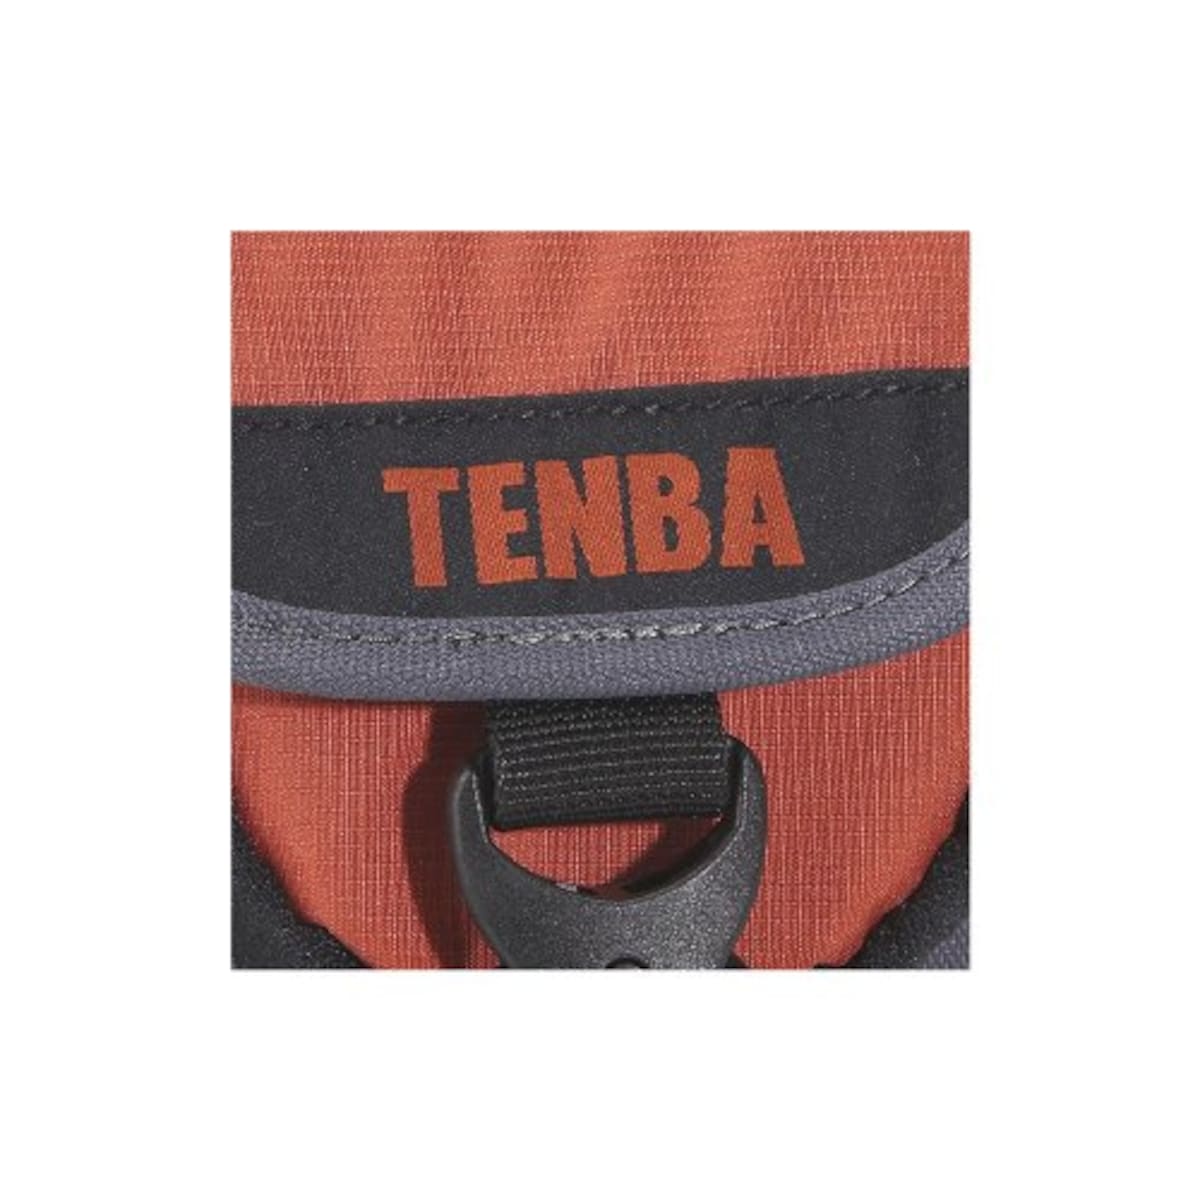  TENBA ショルダーバッグ エクスプレスショルダーバッグS ブラック/グレー 638-531画像6 